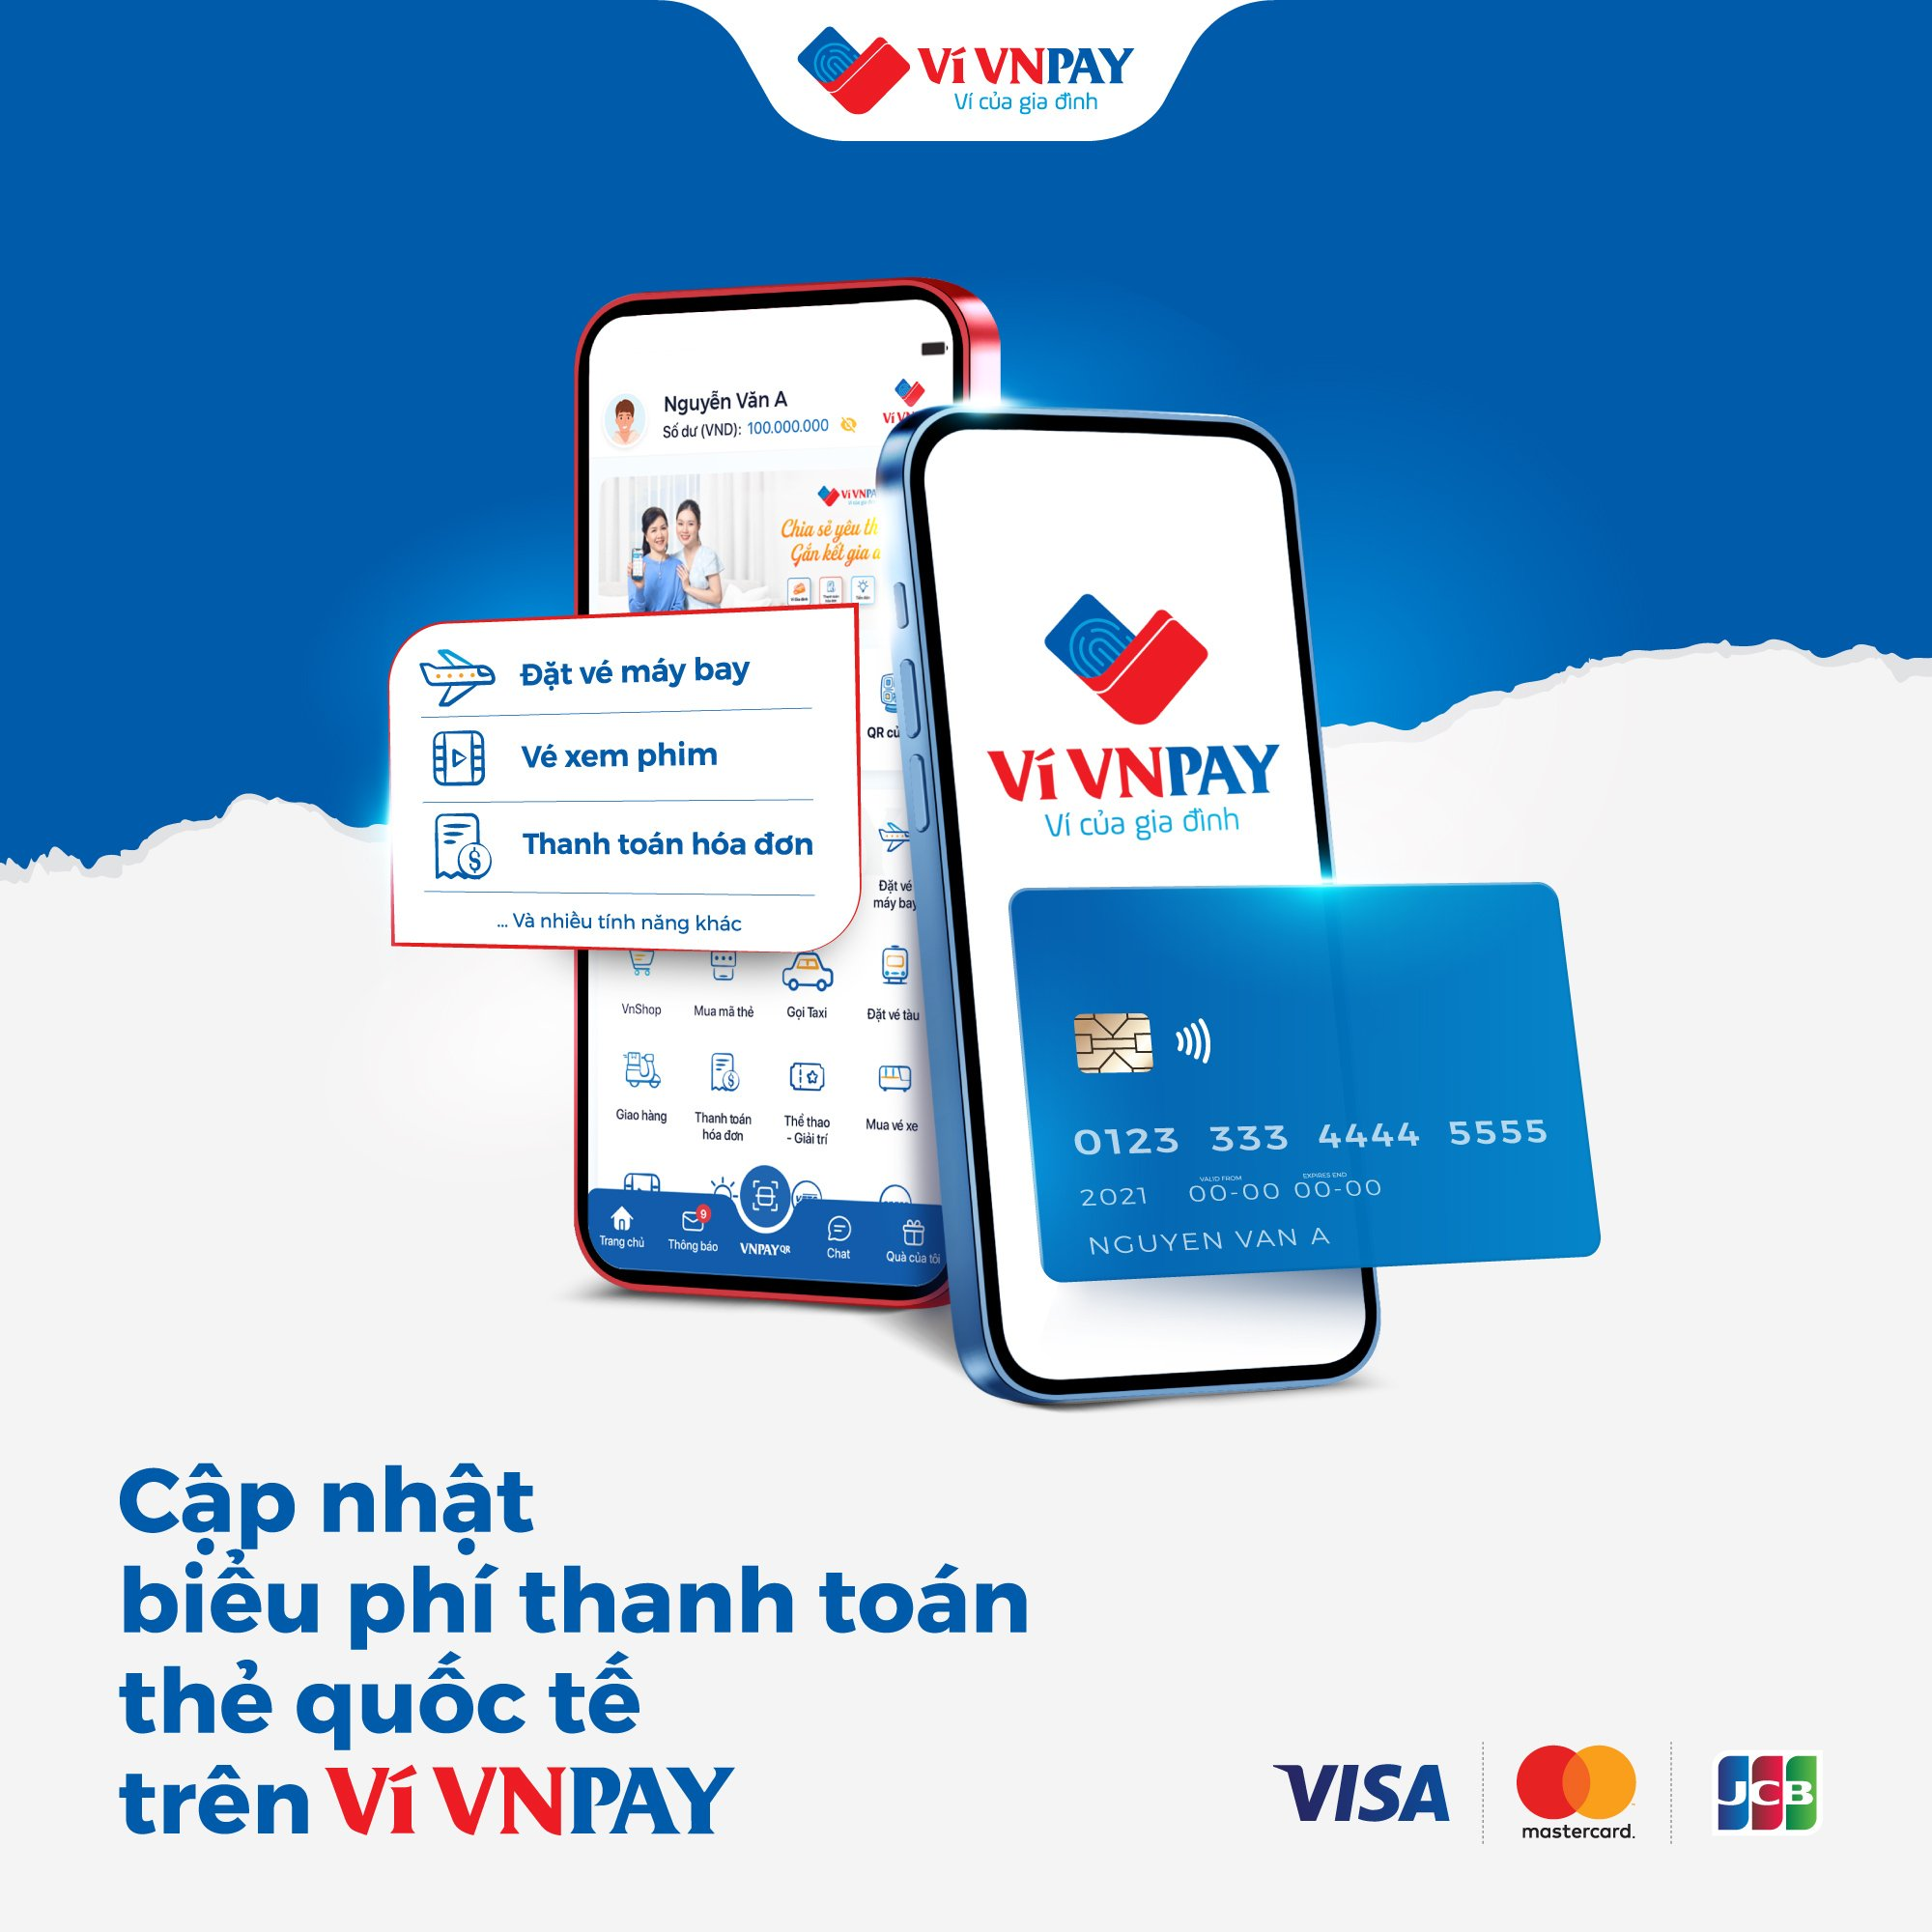 Cập nhật biểu phí thanh toán thẻ quốc tế trên ví VNPAY